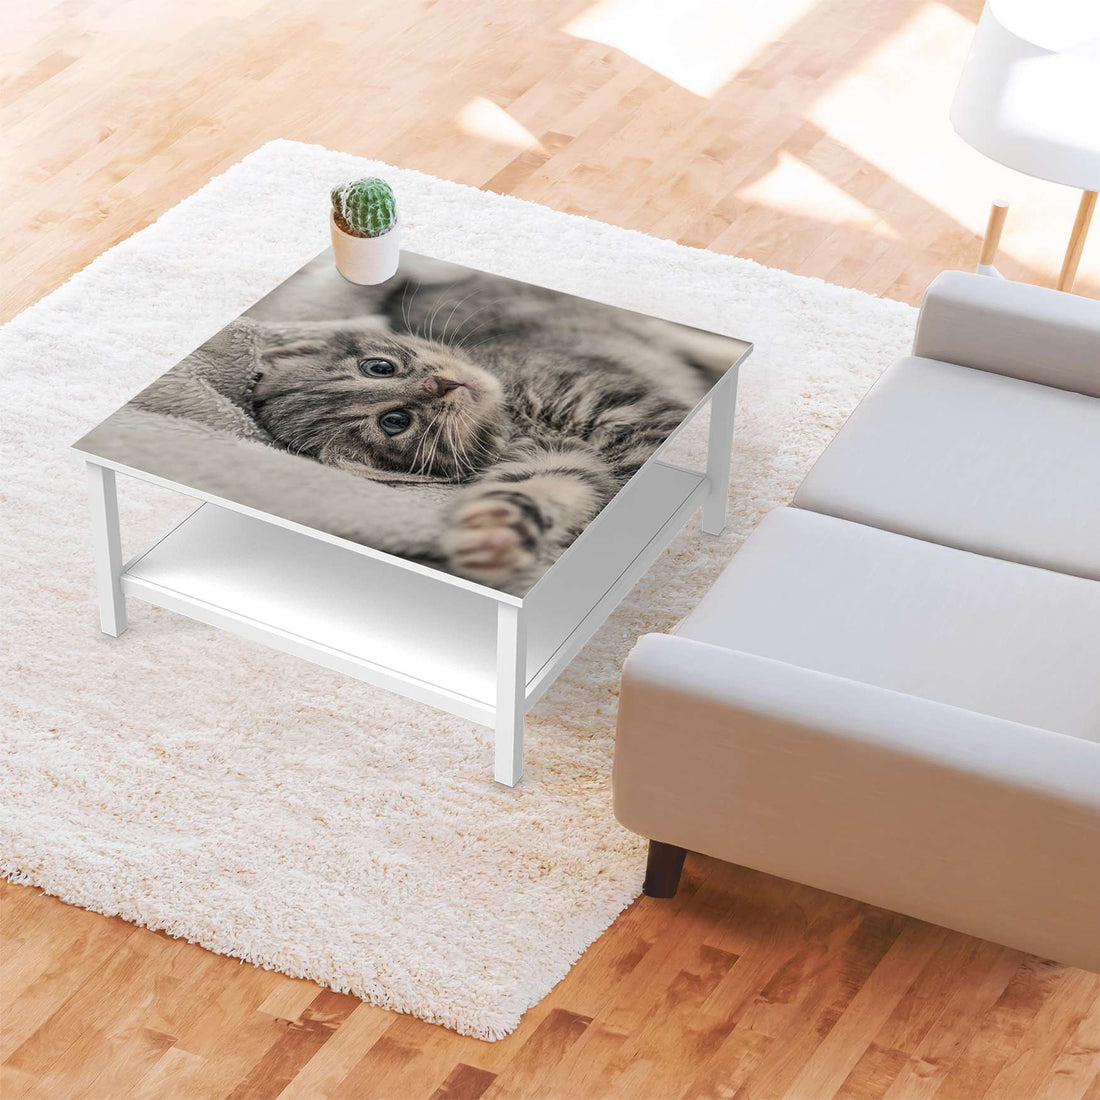 Klebefolie für Möbel Kitty the Cat - IKEA Hemnes Couchtisch 90x90 cm - Wohnzimmer